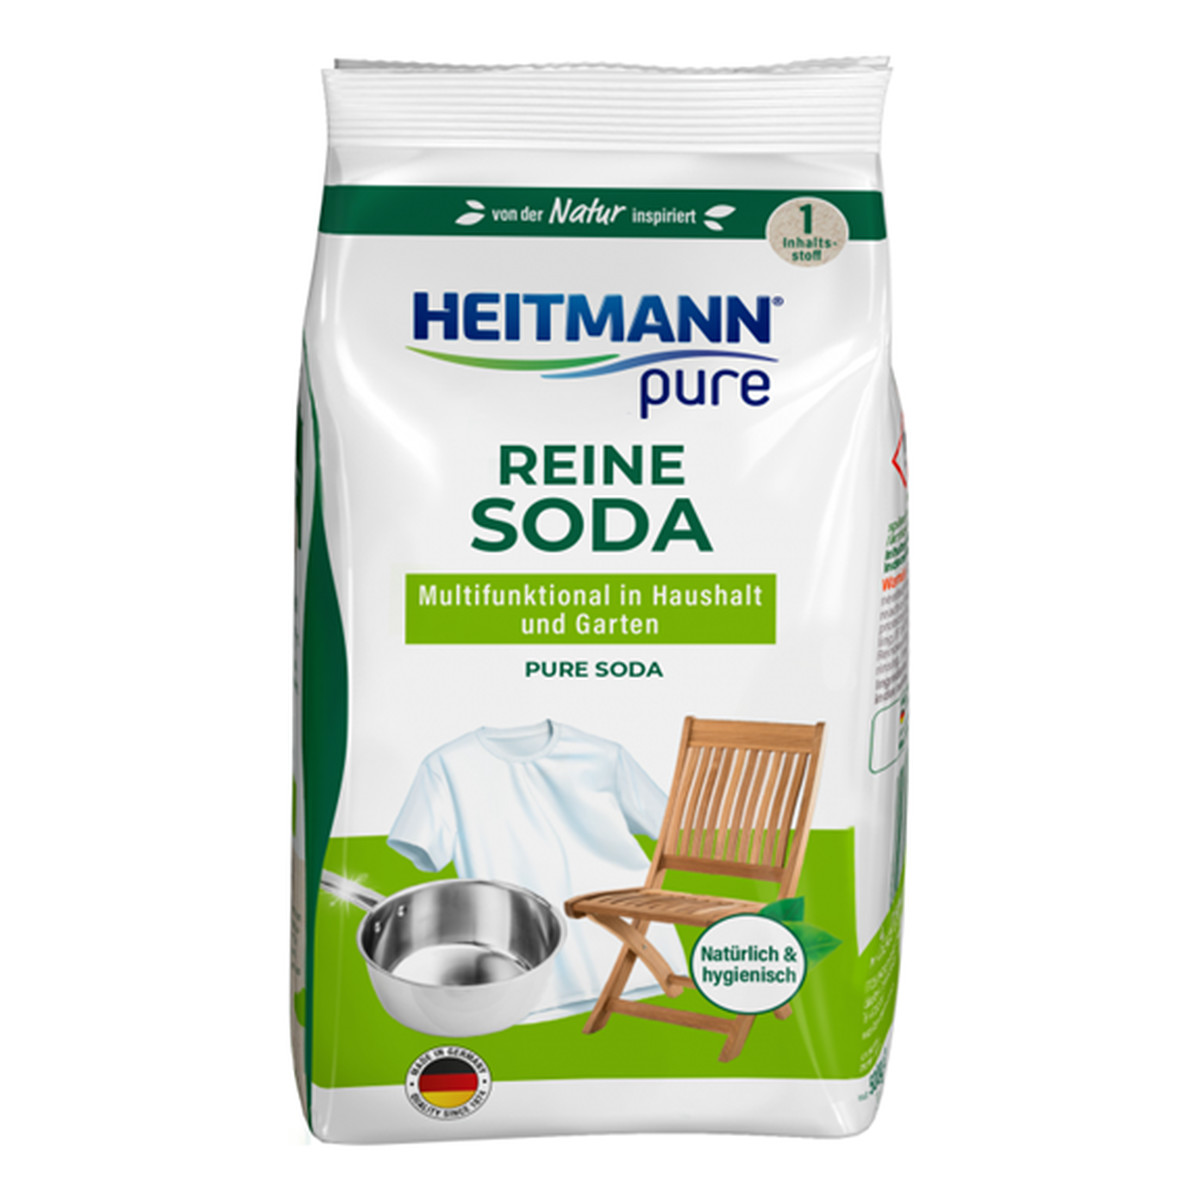 Heitmann Pure Soda Czyszcząca w proszku 500g